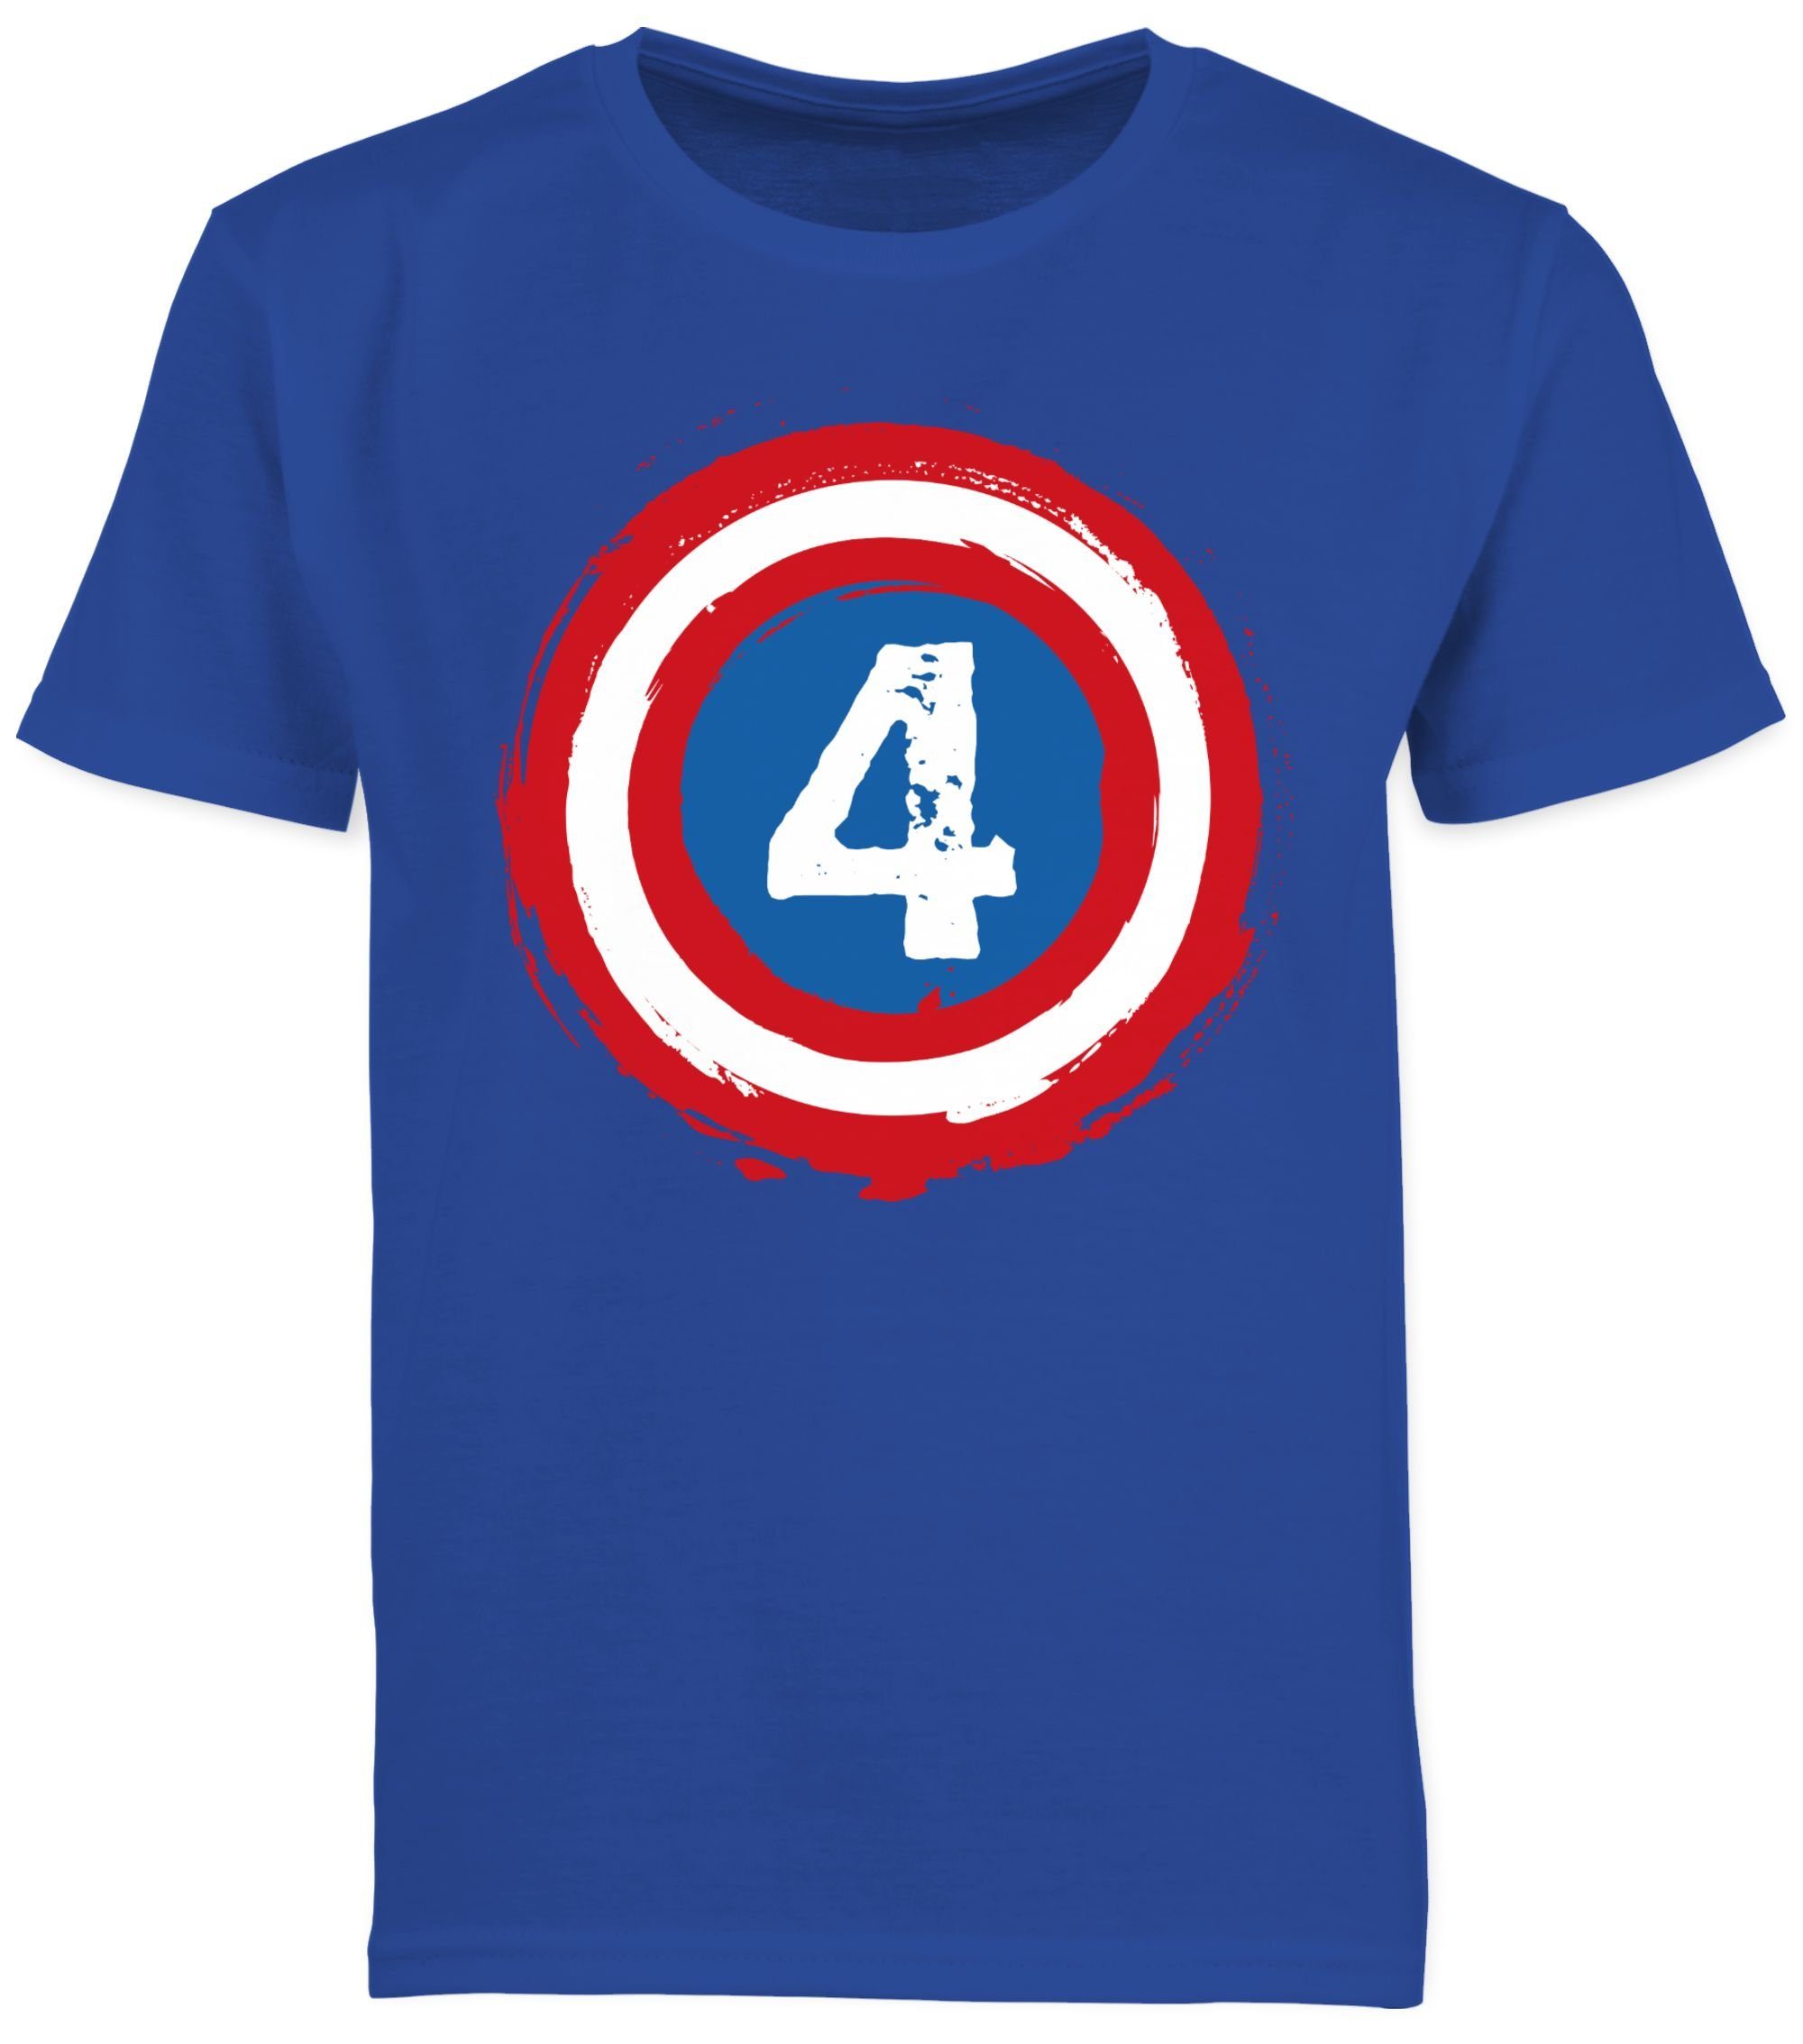 4. Vier 2 Schild Shirtracer Royalblau T-Shirt Superhelden Geburtstag